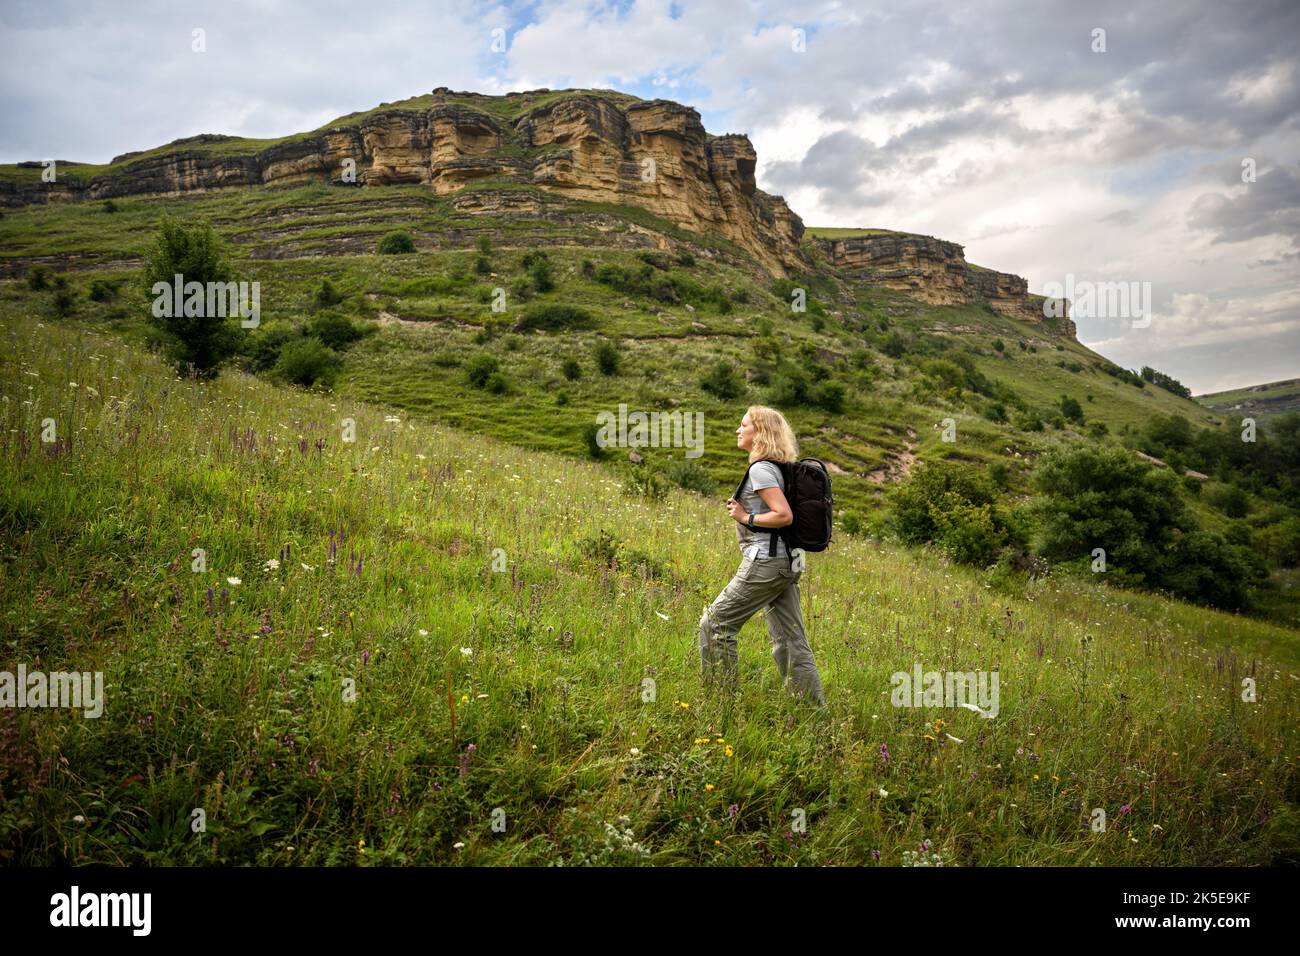 Ragazza viaggiatore in montagna, donna escursionista in salita, giovane turista cammina da solo nel parco nazionale in estate. Concetto di escursione, avventura, nat selvaggio Foto Stock